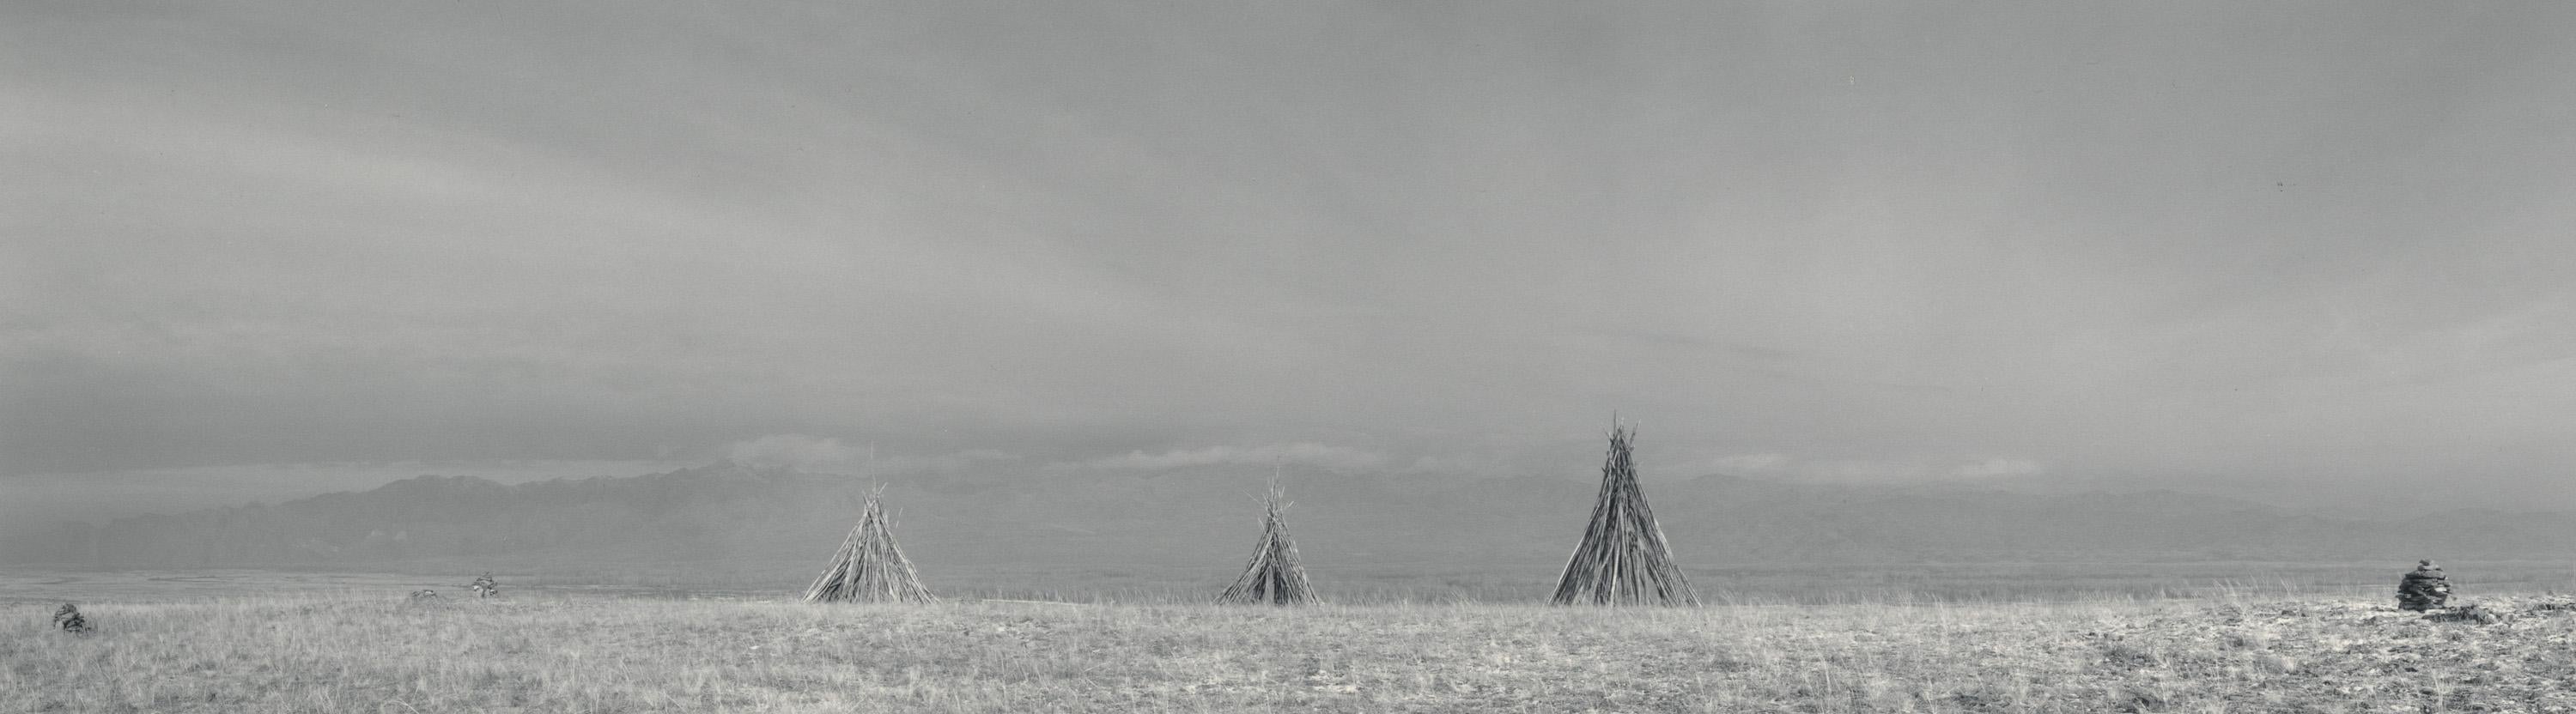 Black and White Photograph Pentti Sammallahti - Sayan, Tuva Siberia (places de cheminée Teepee dans un champ ouvert, ciel d'hiver)